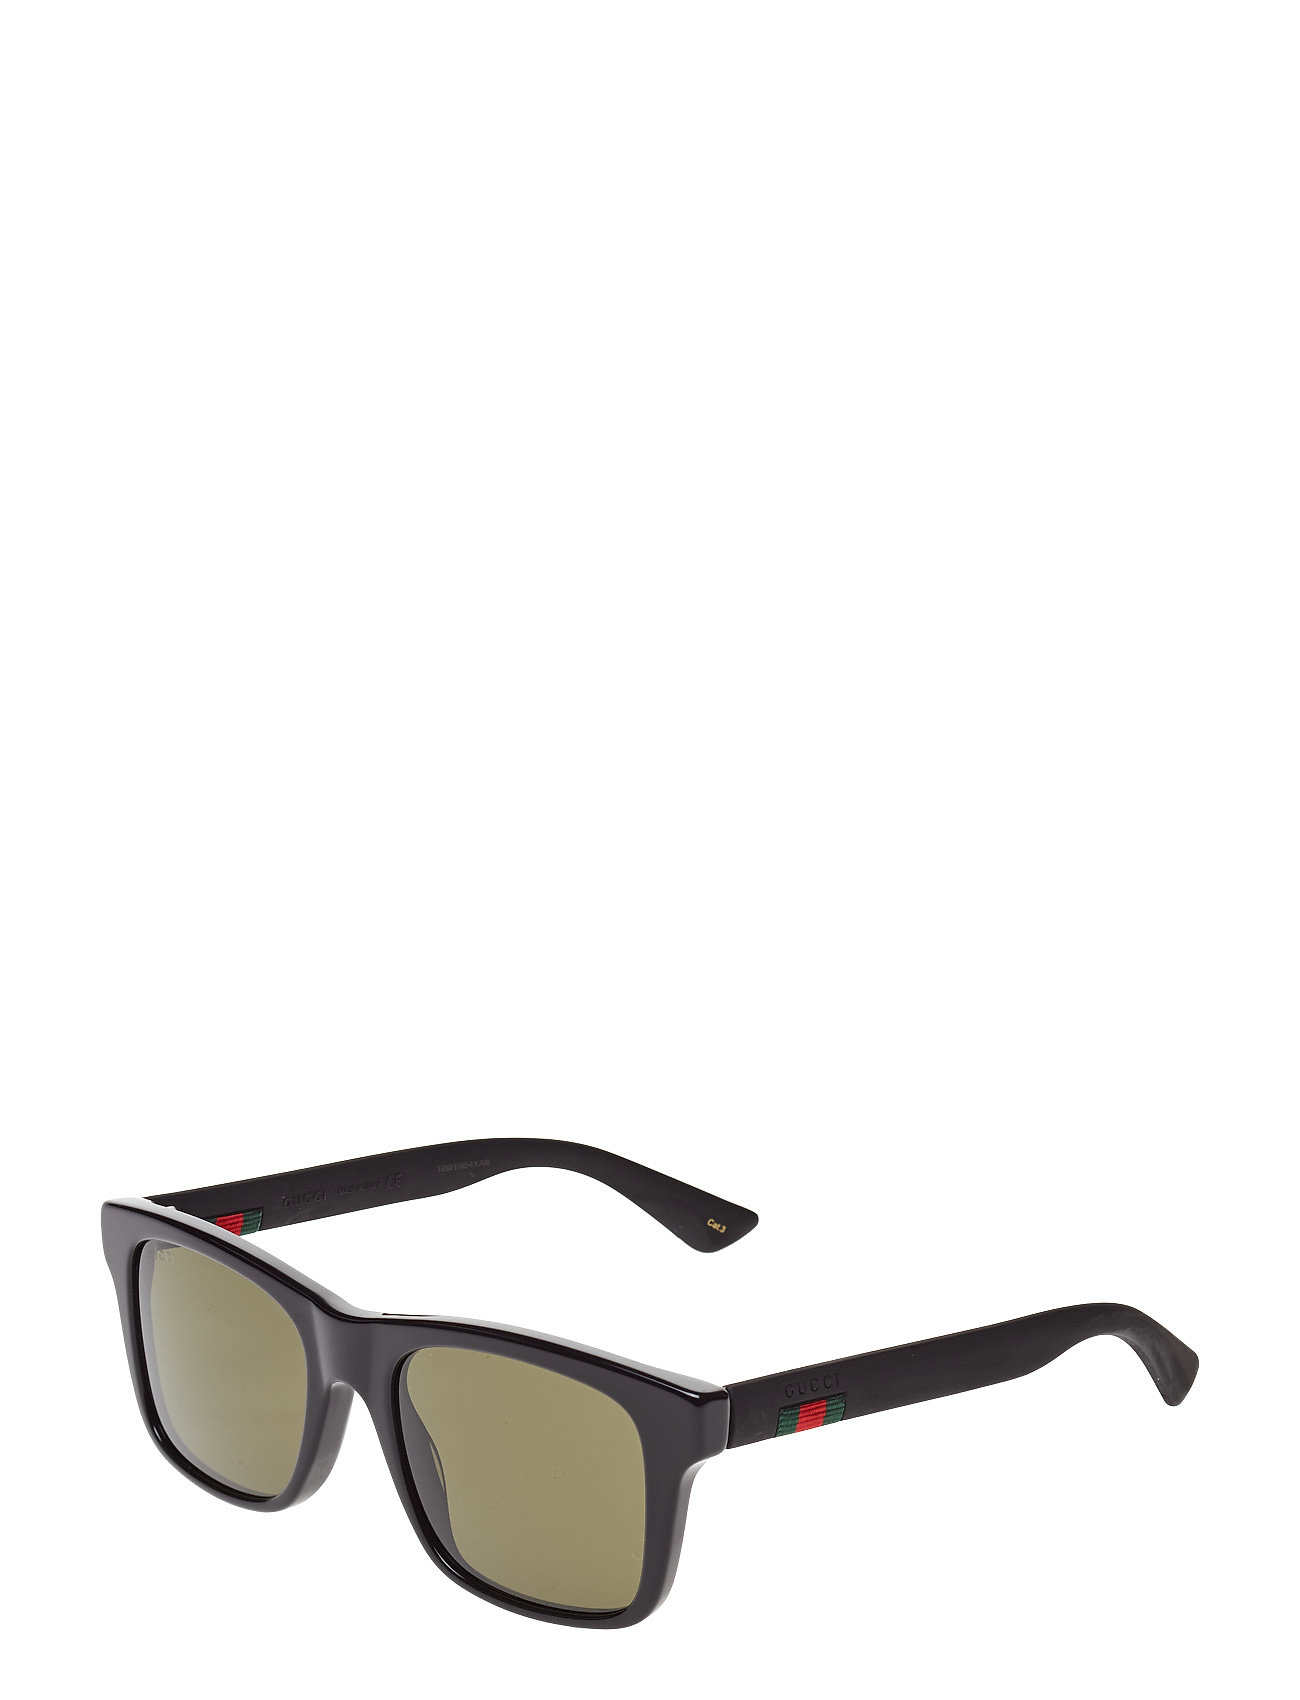 Gucci solbriller – Gg0008s til i - Pashion.dk